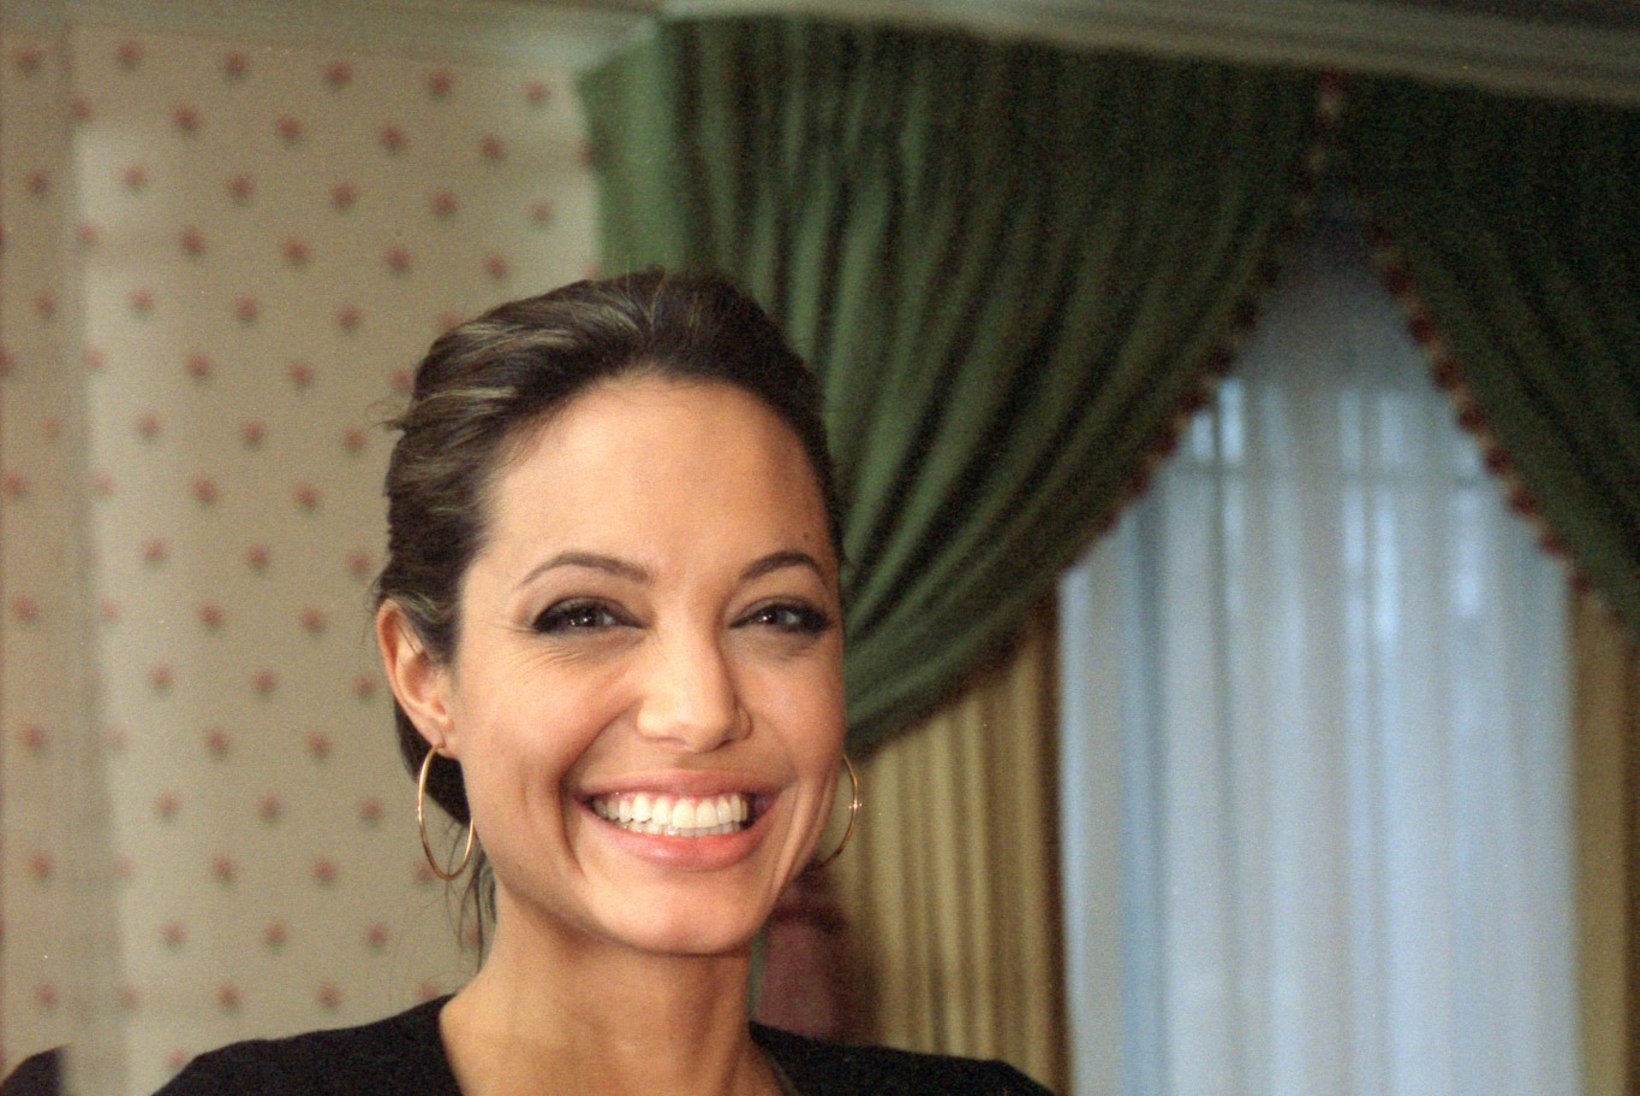 VALLALISEELU VÕLUD: Angelina Jolie kolis luksuslikku häärberisse